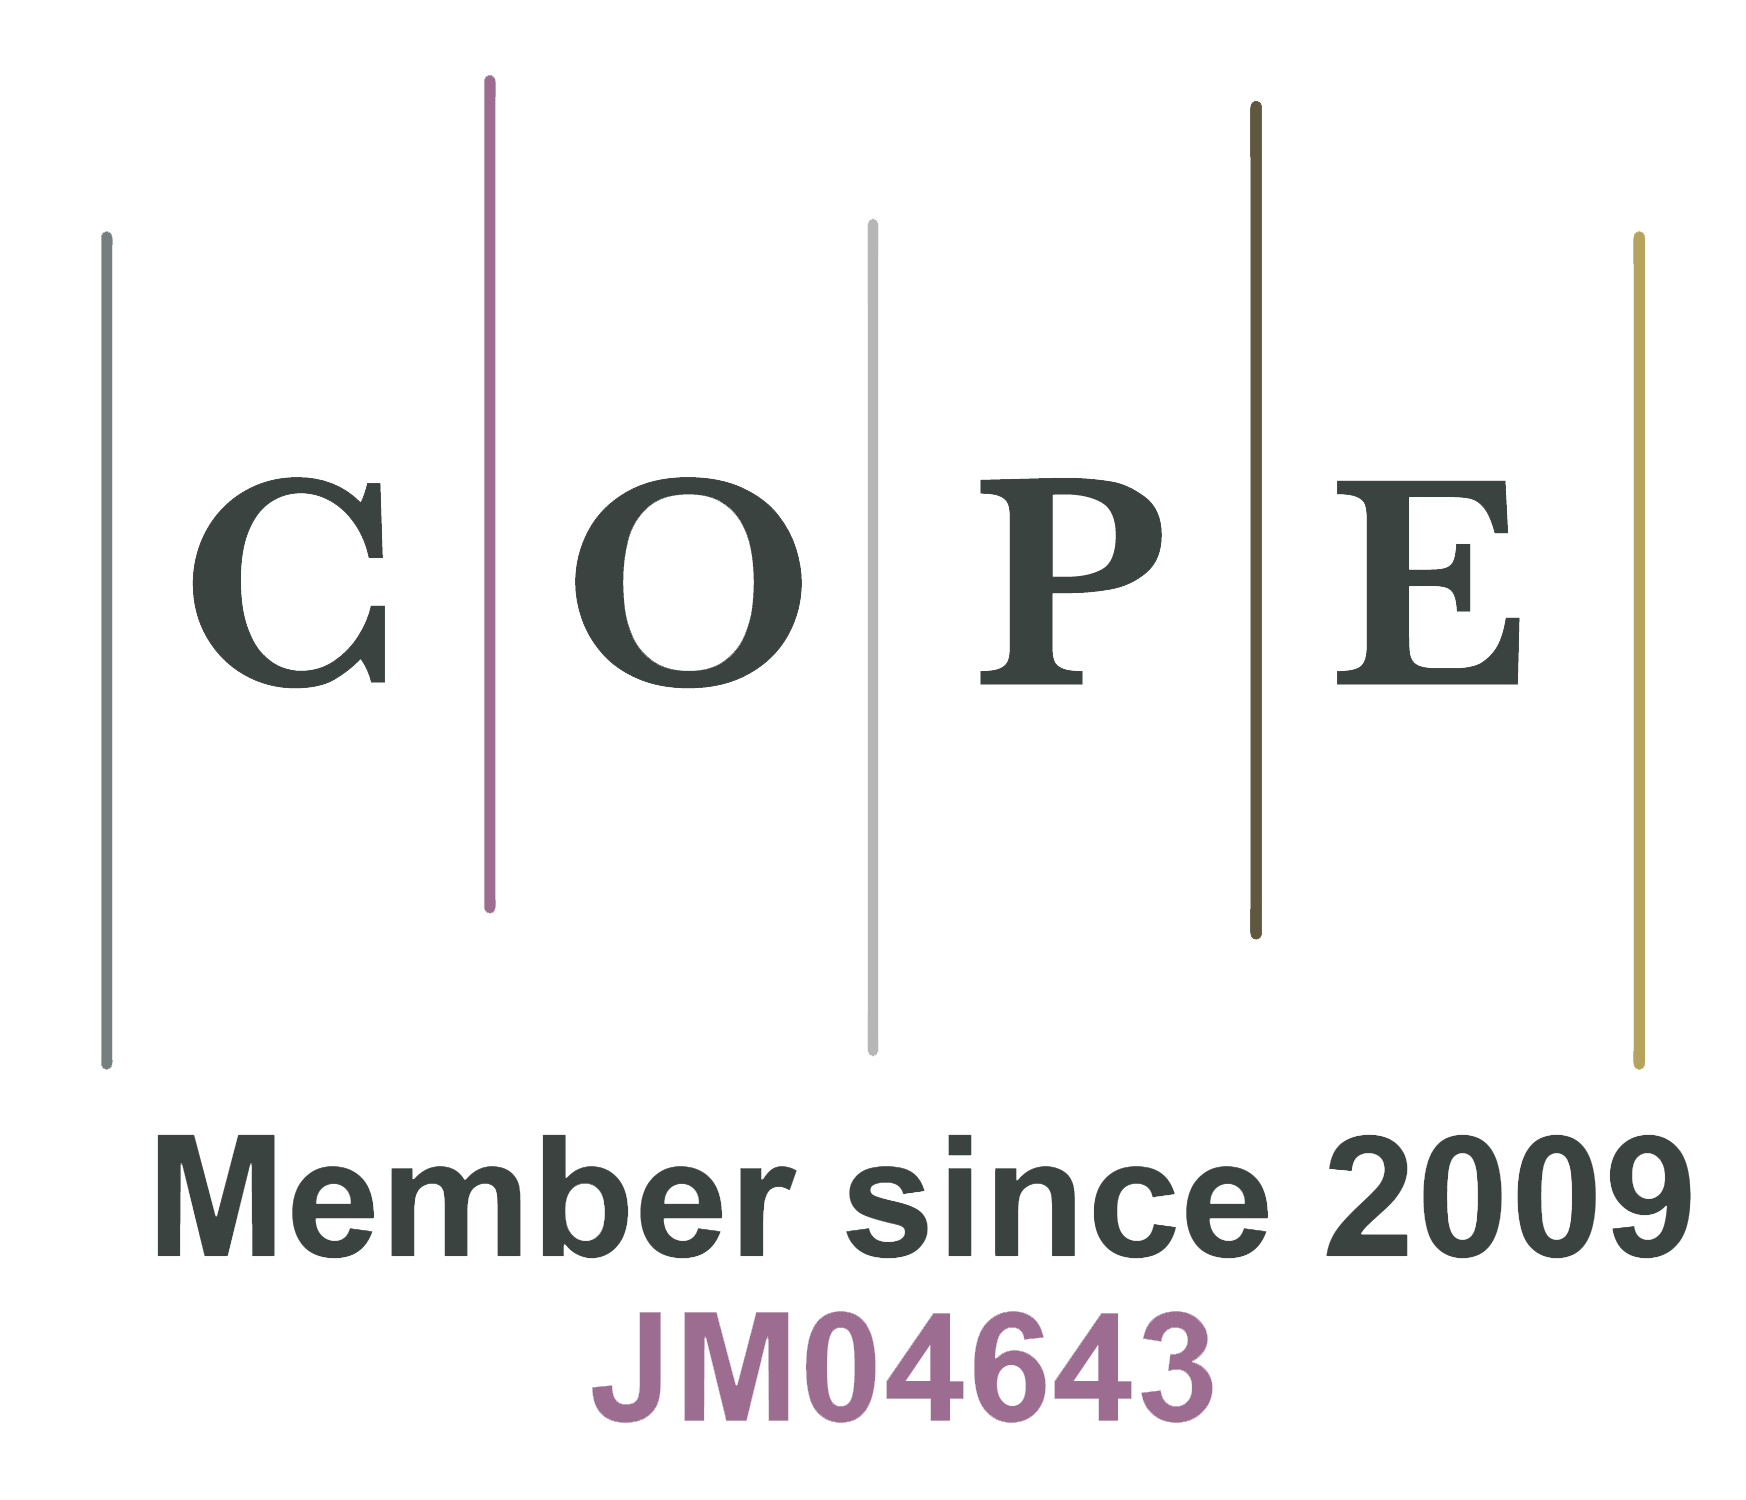 2009年成为COPE成员JM04643